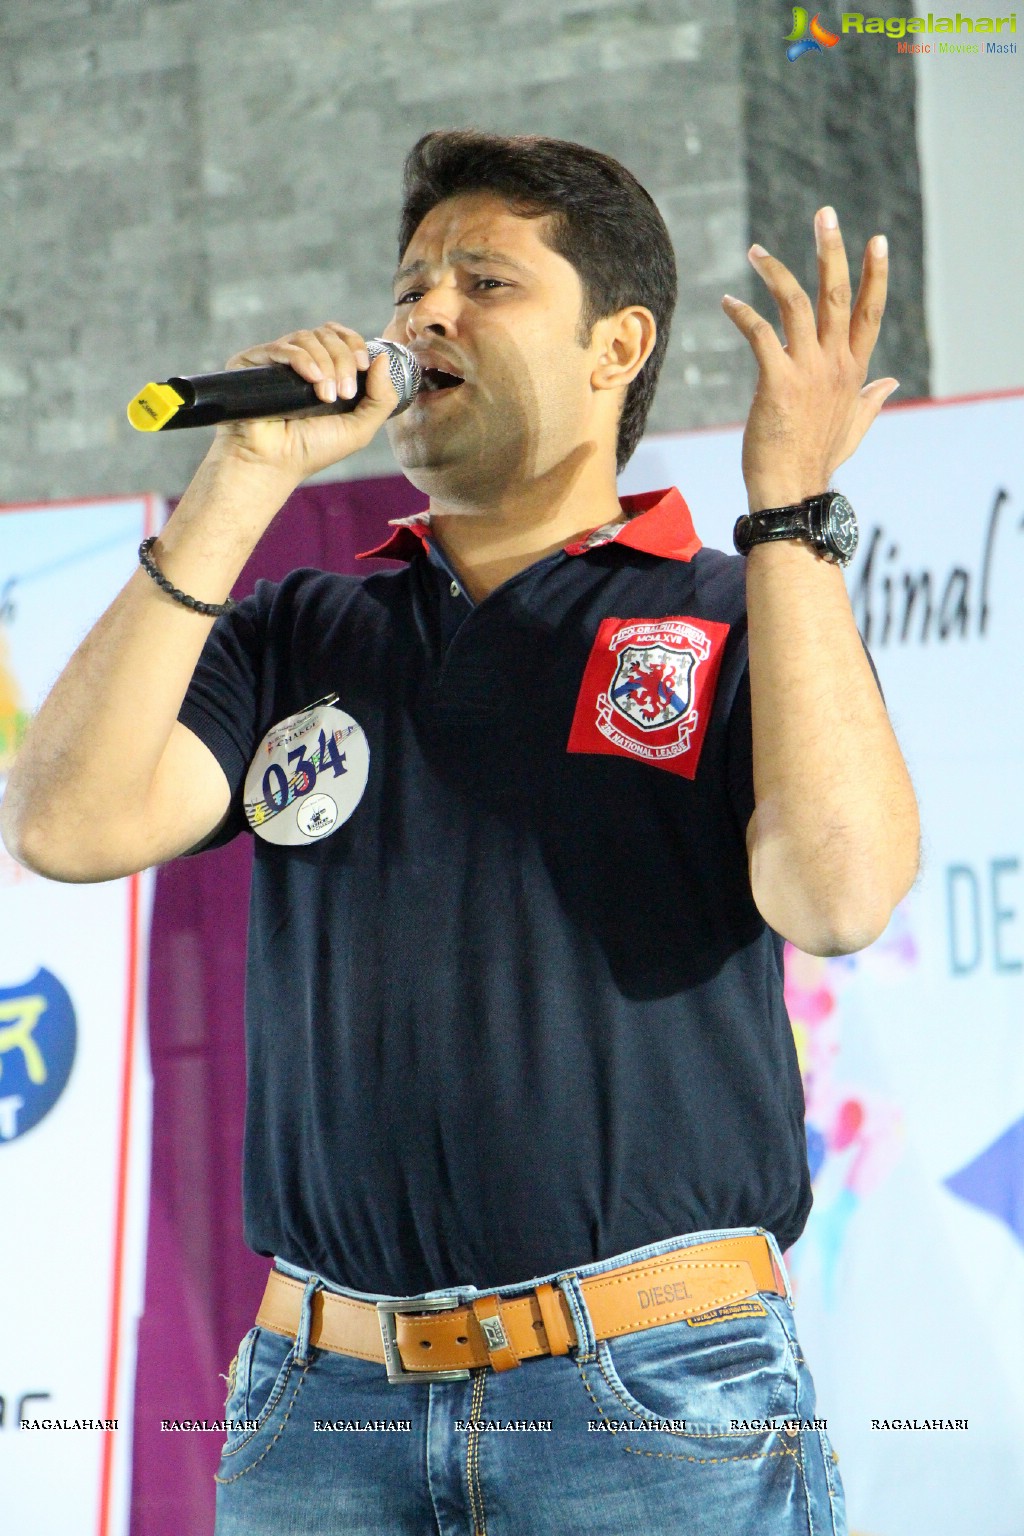 Launch of Voice of Chak De